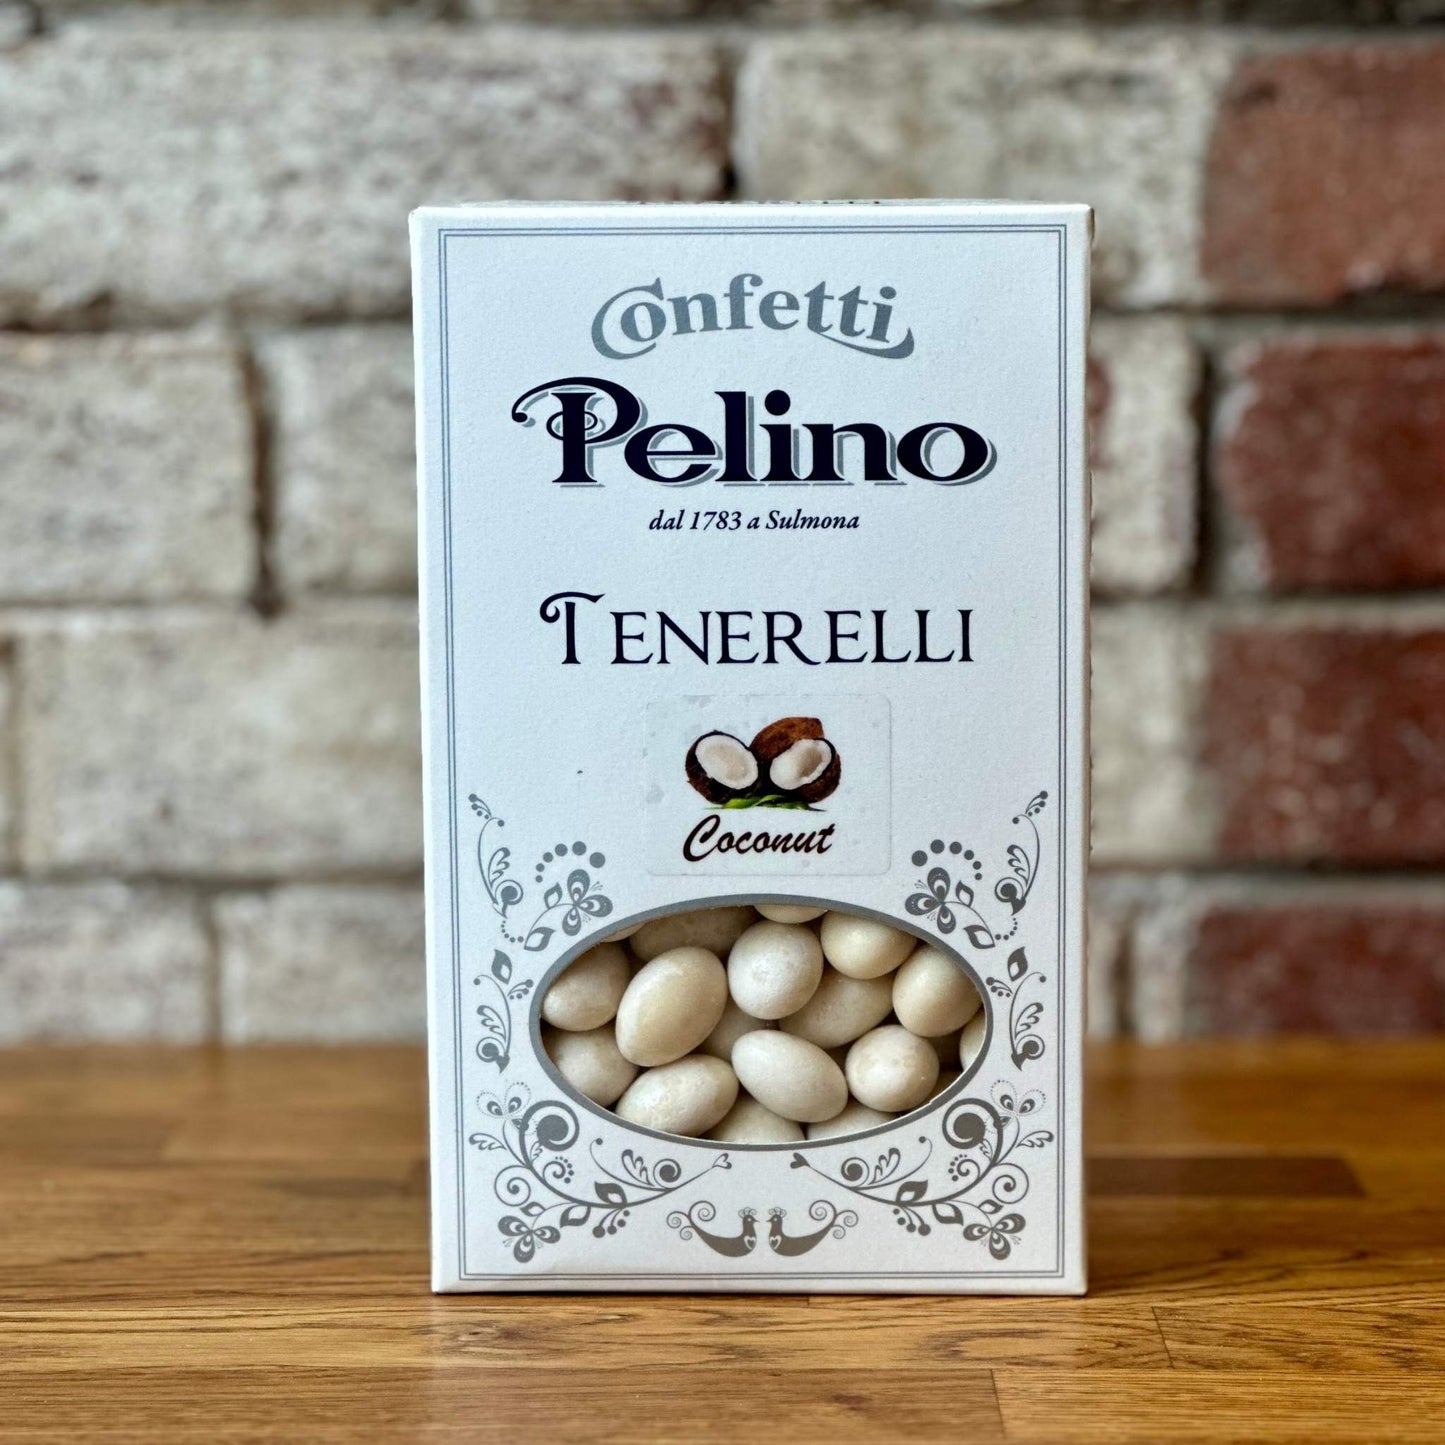 Coconut Tenerelli Pelino 500g - Confetti